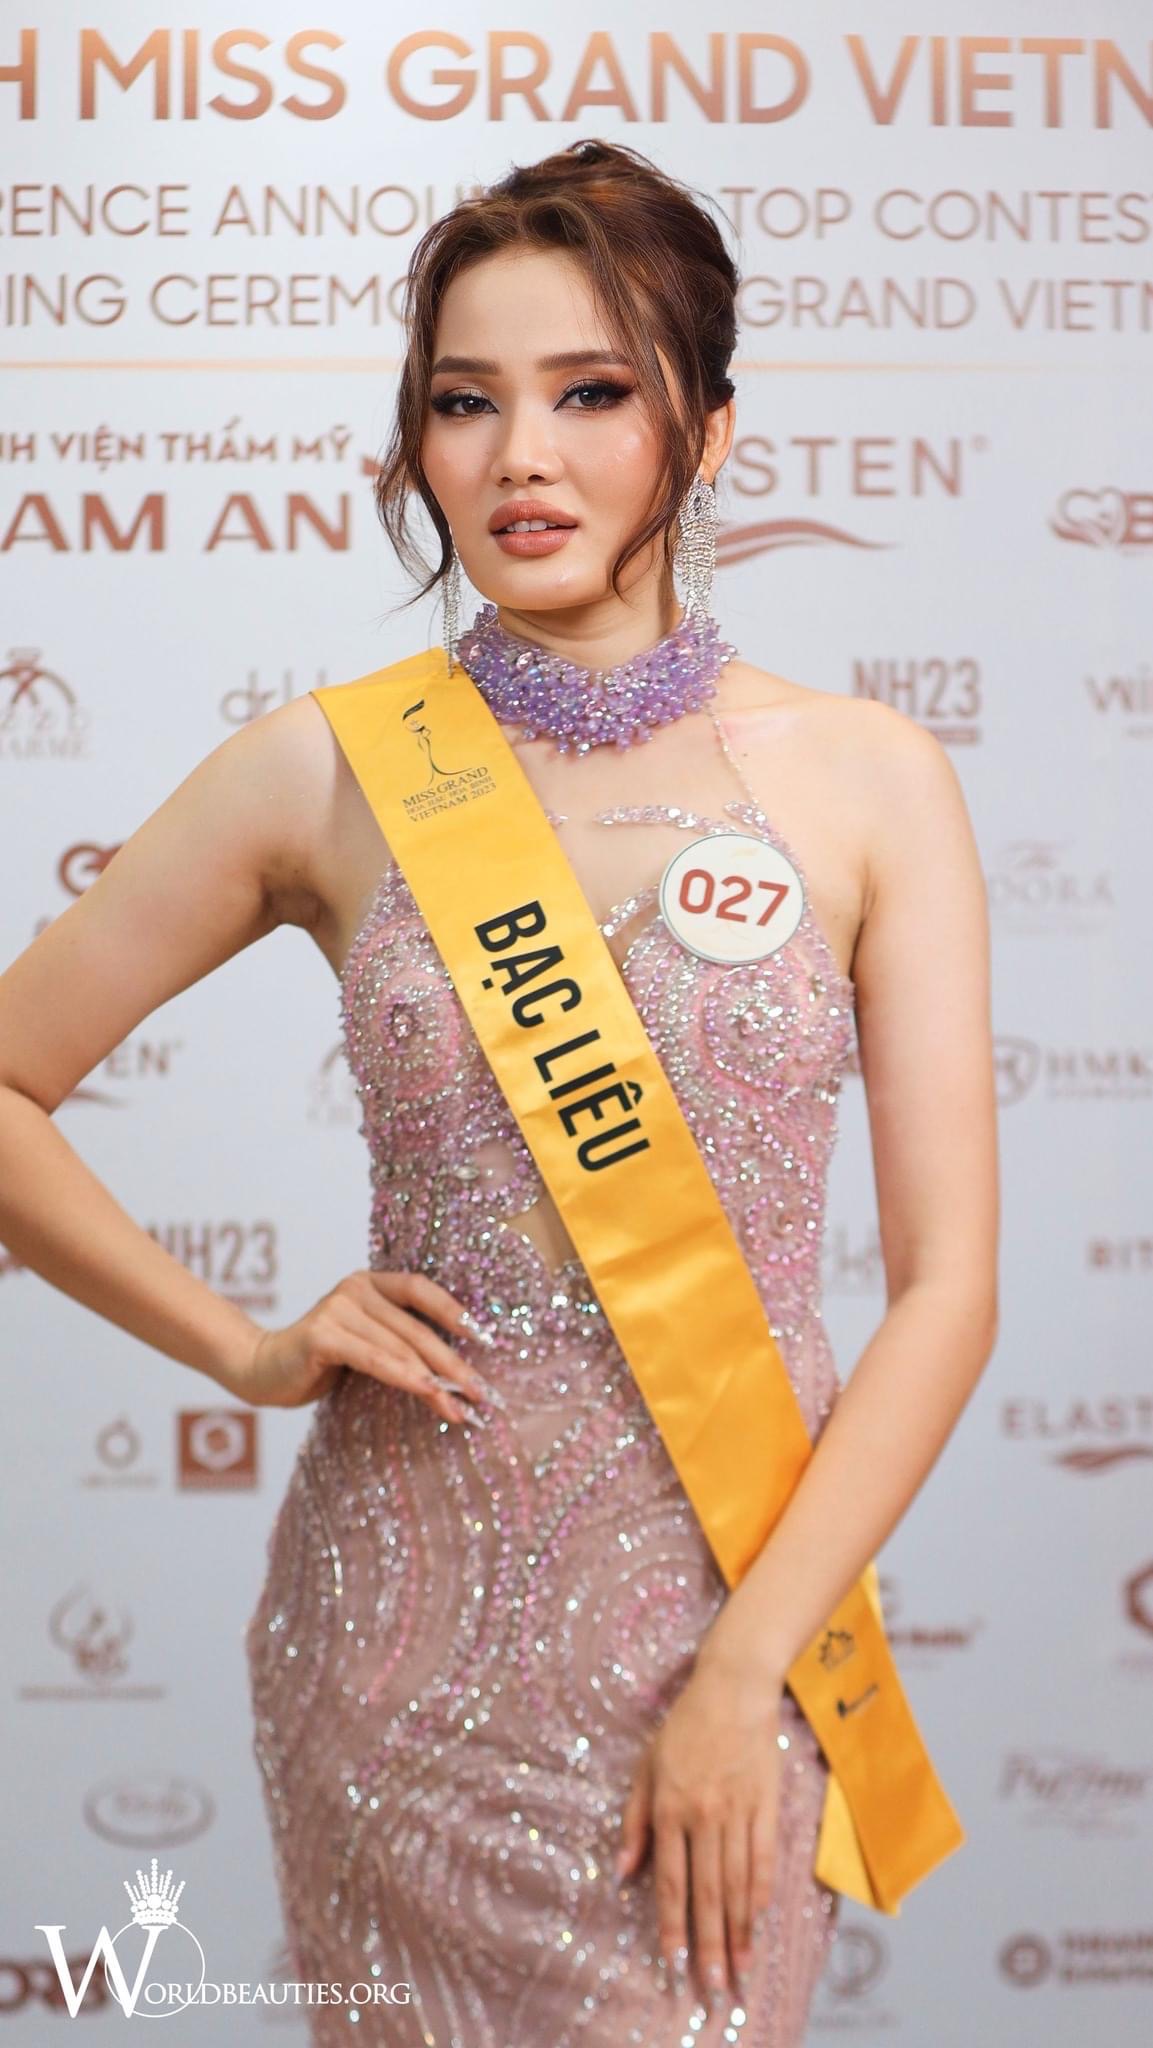 Độc lạ thí sinh tại Miss Grand Vietnam 2023: Giấu trang phục "kín như bưng", biết pro5 mới bất ngờ - Ảnh 5.